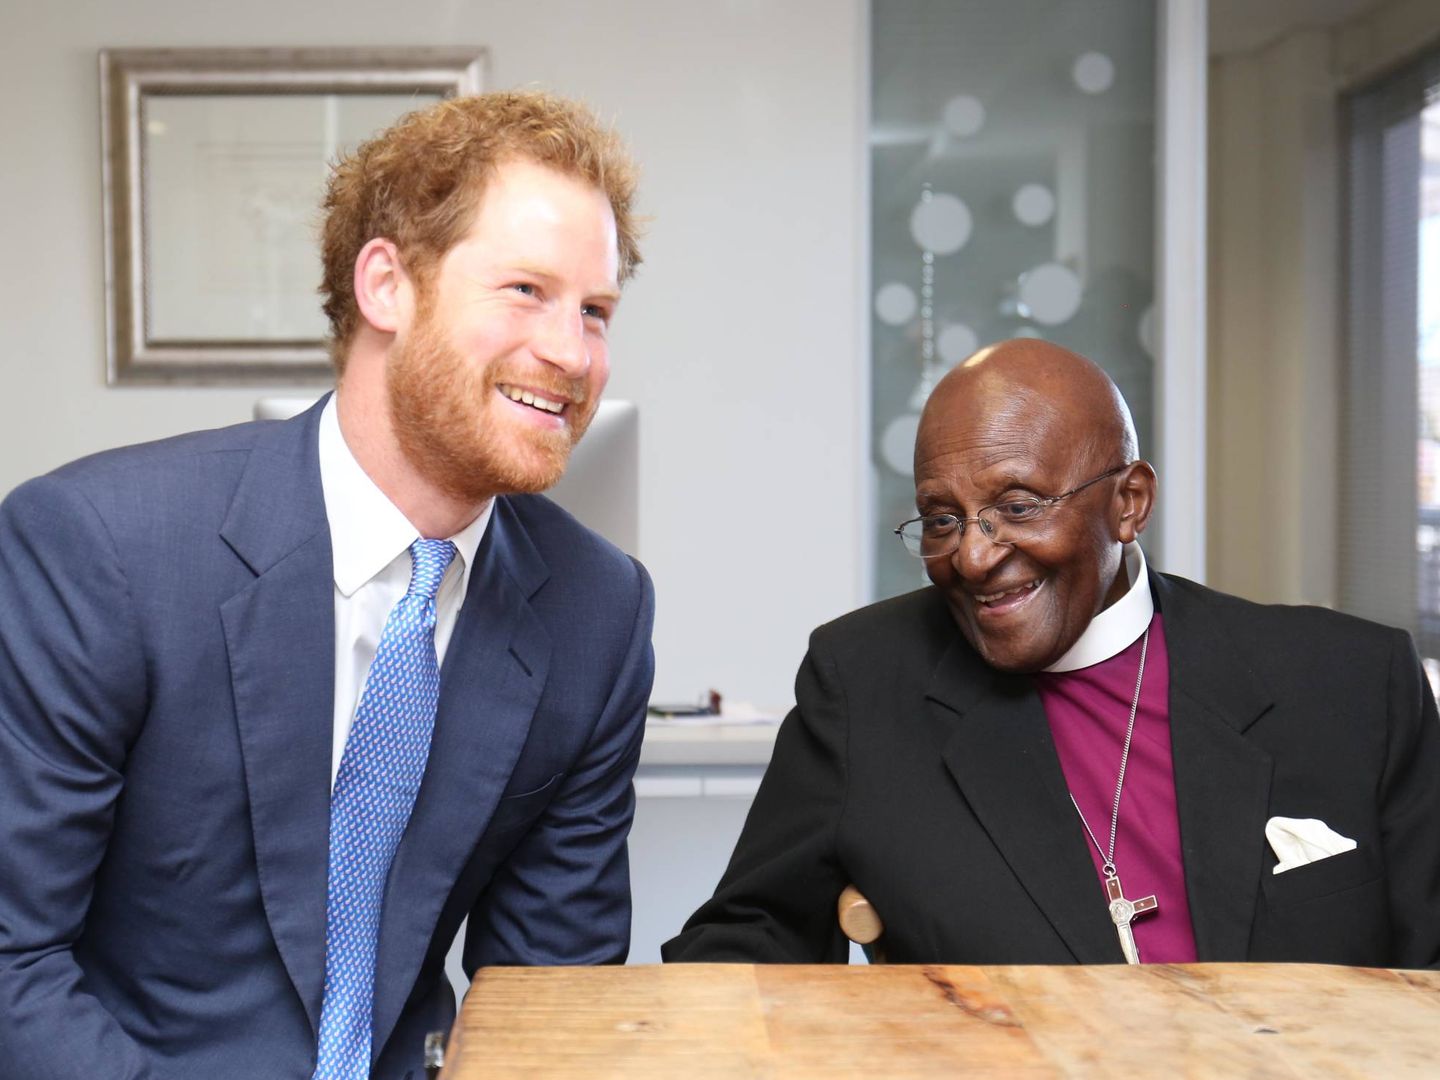 El príncipe Harry junto a Desmond Tutu en una visita a Sudáfrica en 2015. (Getty)